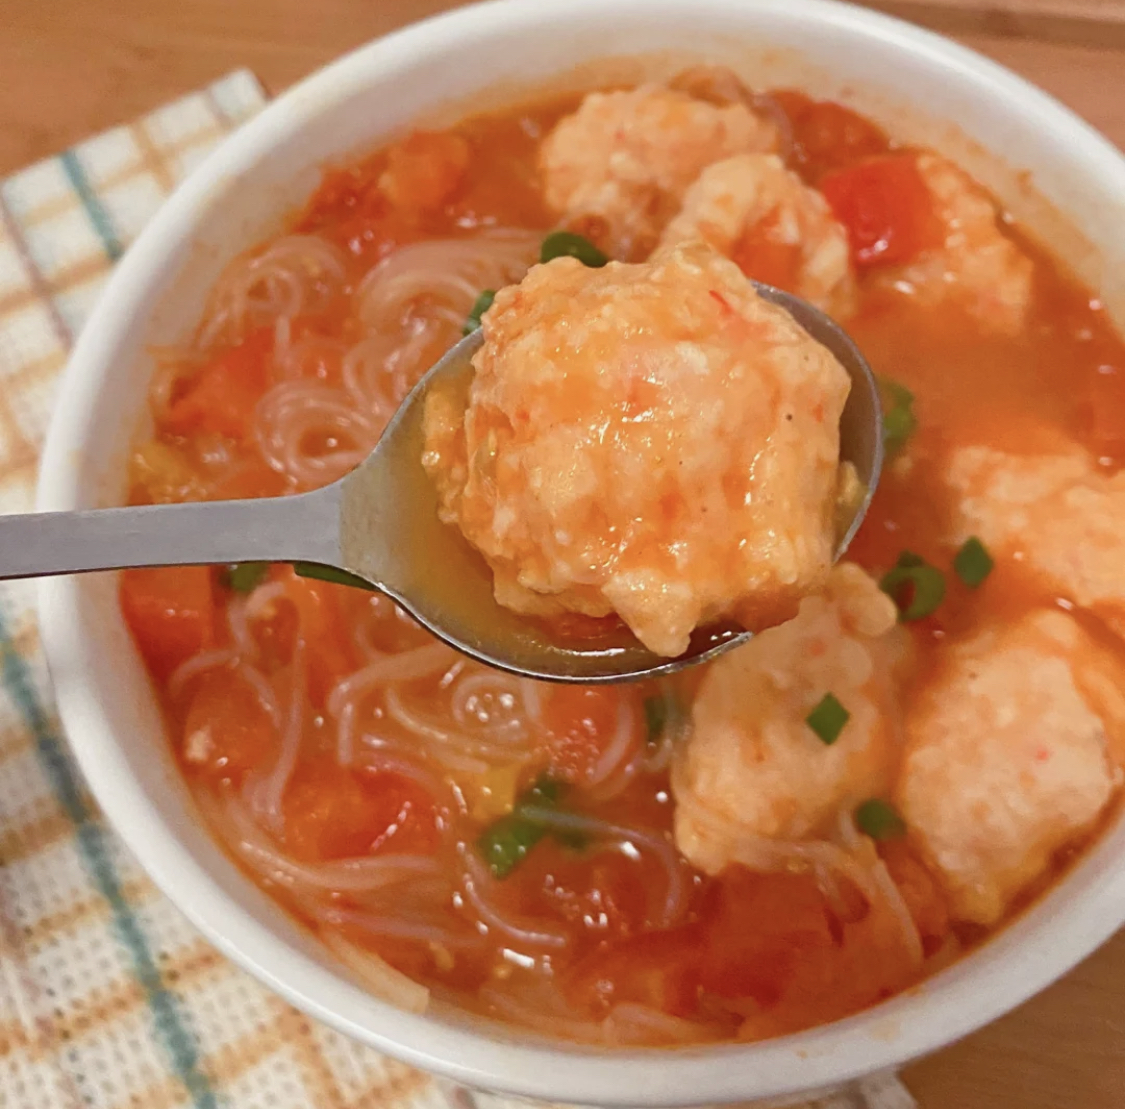 汤汁超浓郁的番茄虾滑粉丝汤,低脂低卡高蛋白,吃到撑也不怕胖!